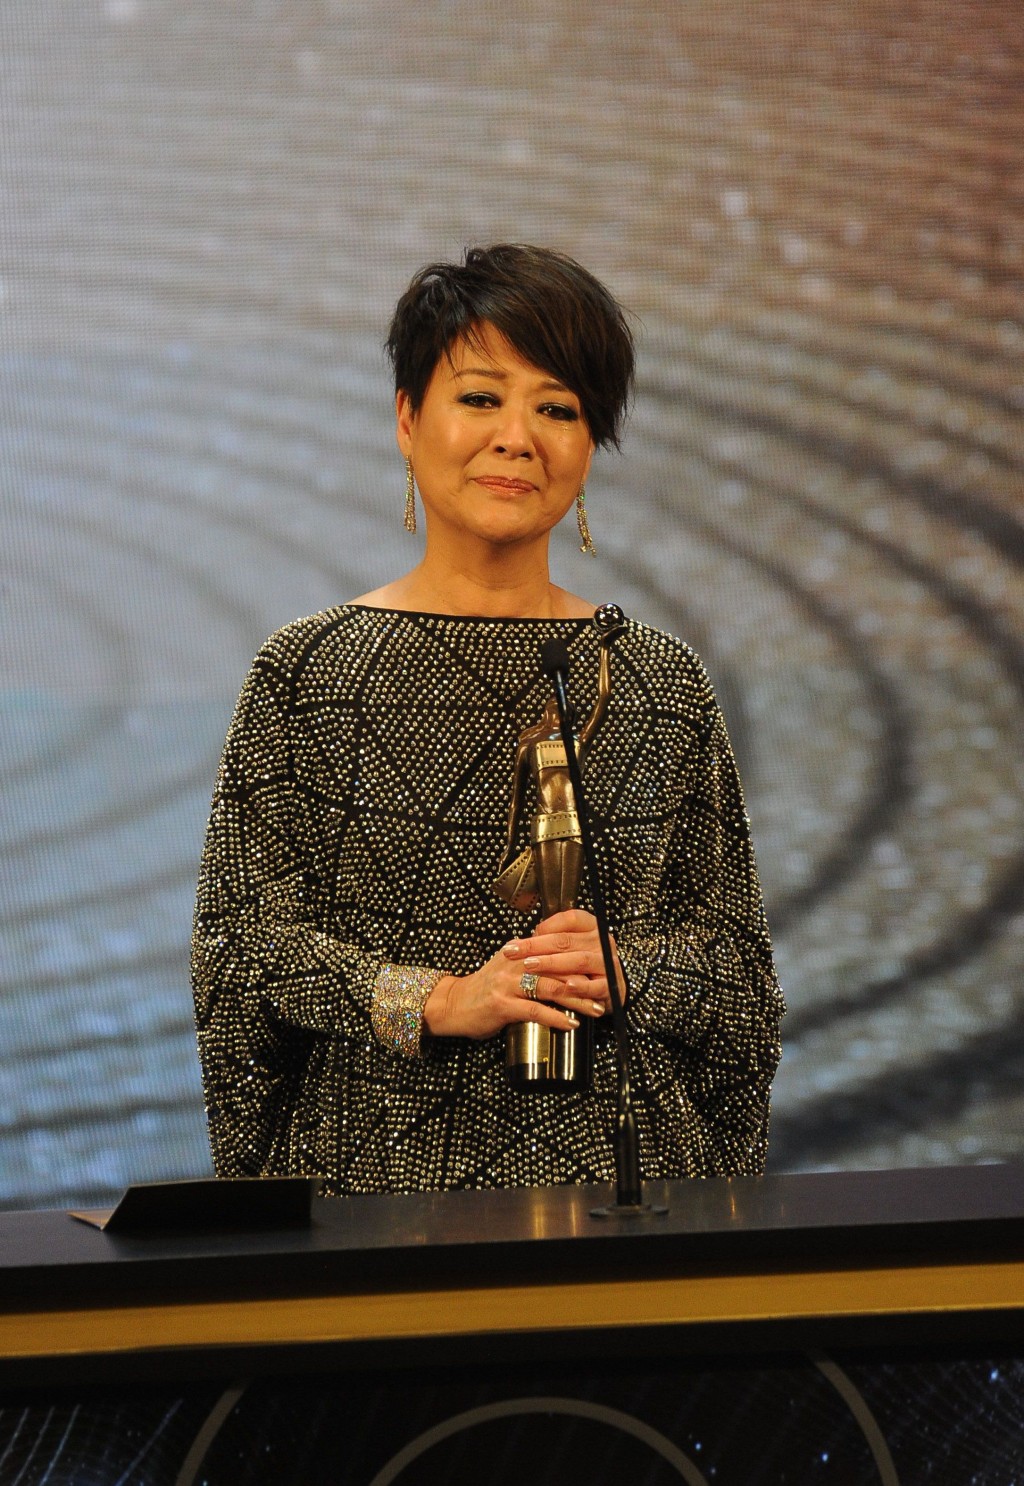 金燕玲多度奪得香港電影金像獎及台灣金馬獎的「最佳女配角」獎項。